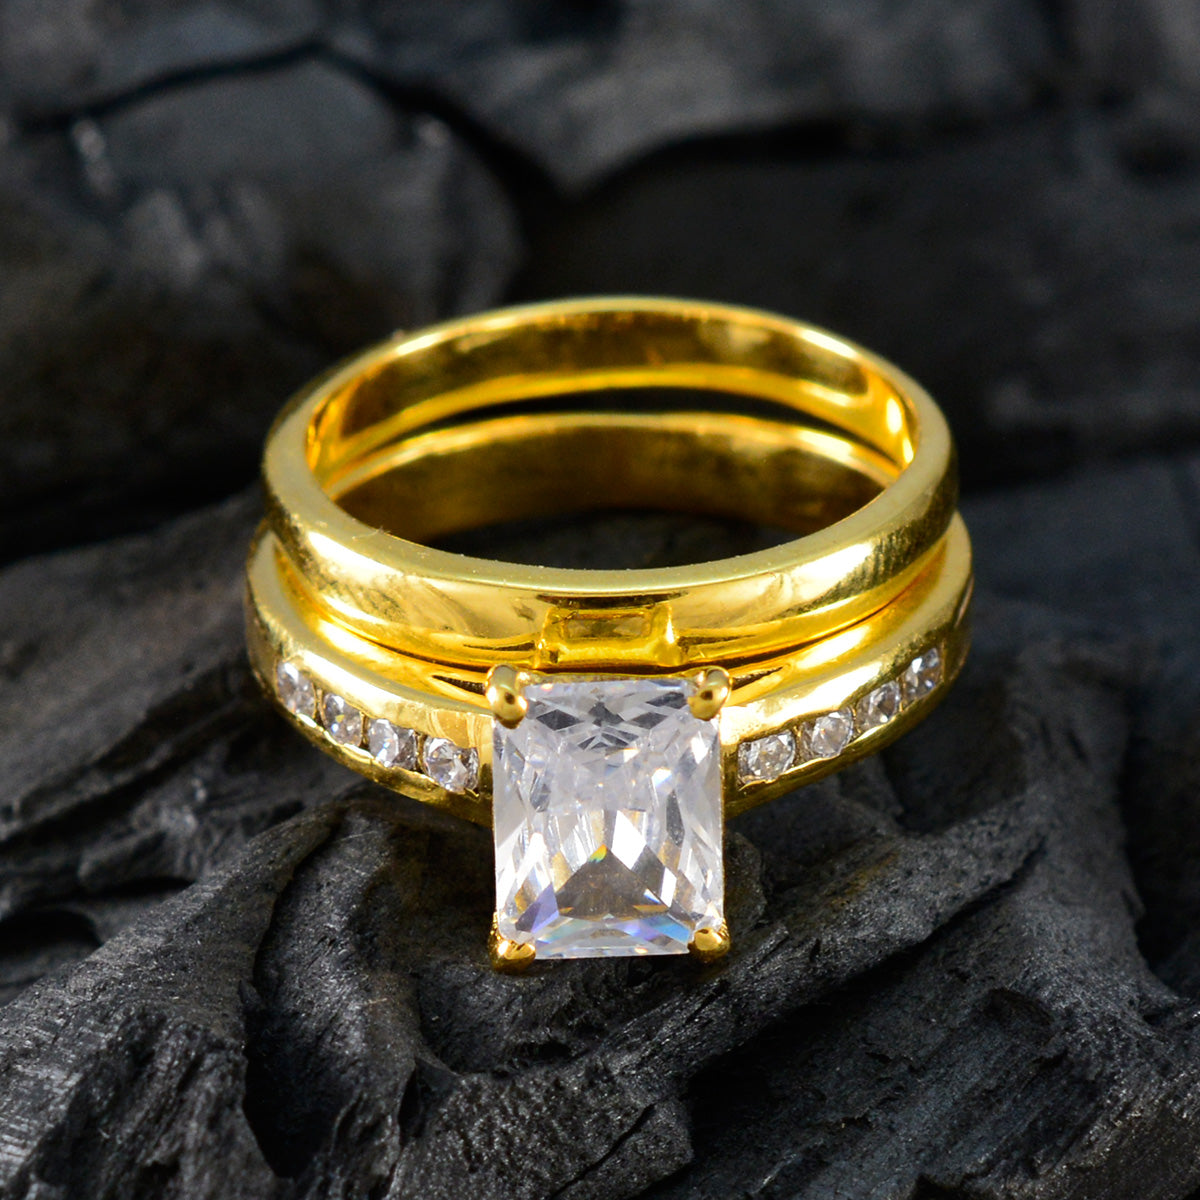 Серебряное кольцо riyo perfect с покрытием из желтого золота, кольцо с закрепкой зубца восьмиугольной формы из белого камня cz